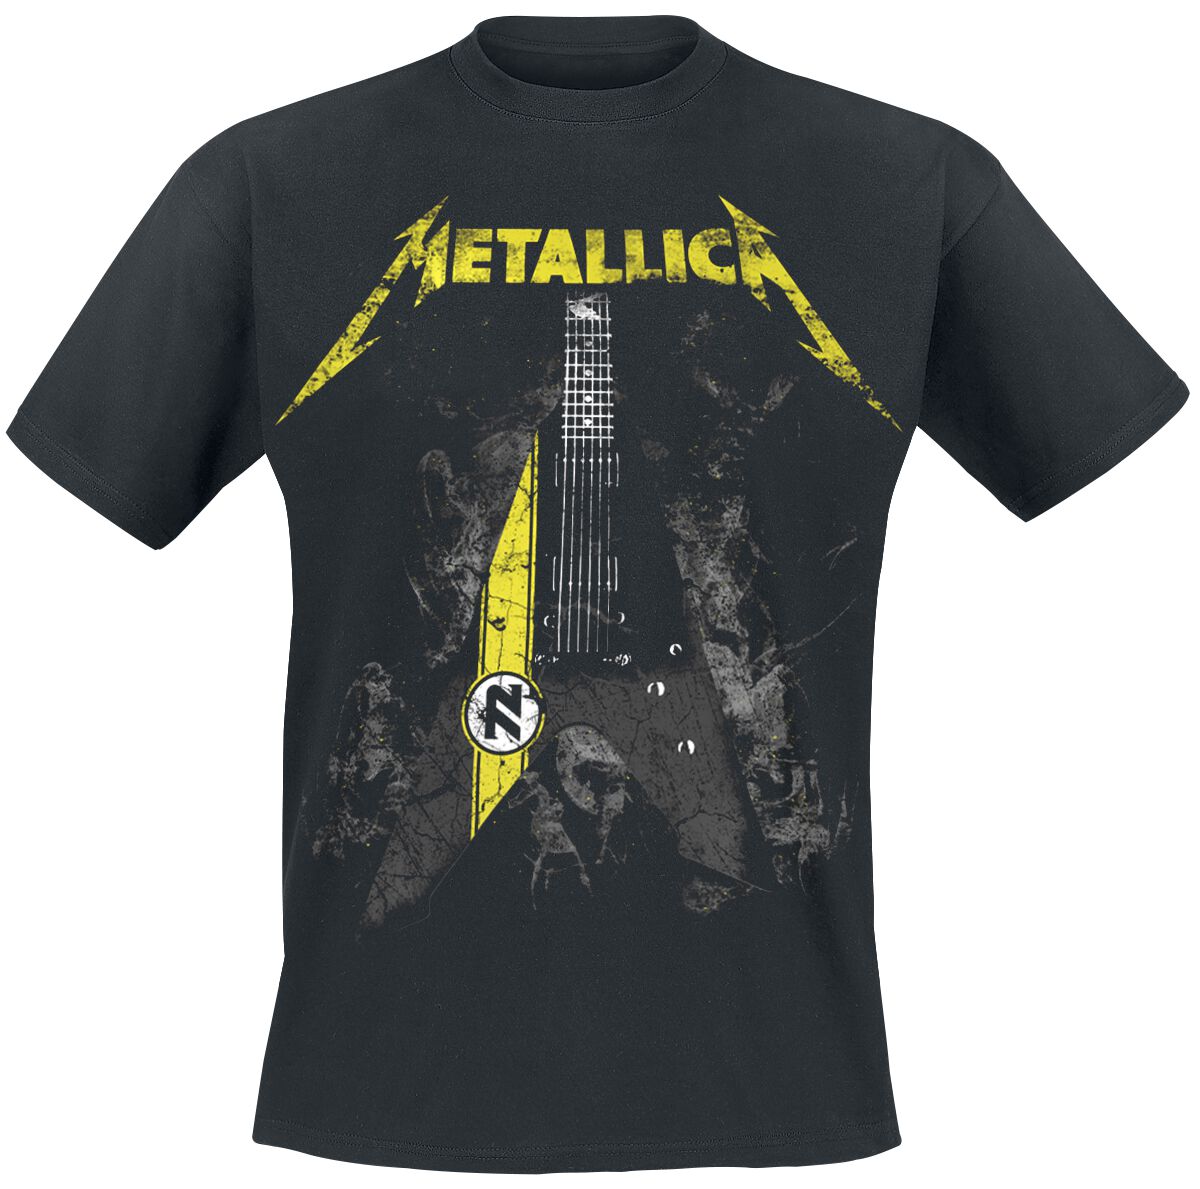 Metallica T-Shirt - Hetfield Vulture - S bis 5XL - für Männer - Größe S - schwarz  - Lizenziertes Merchandise!